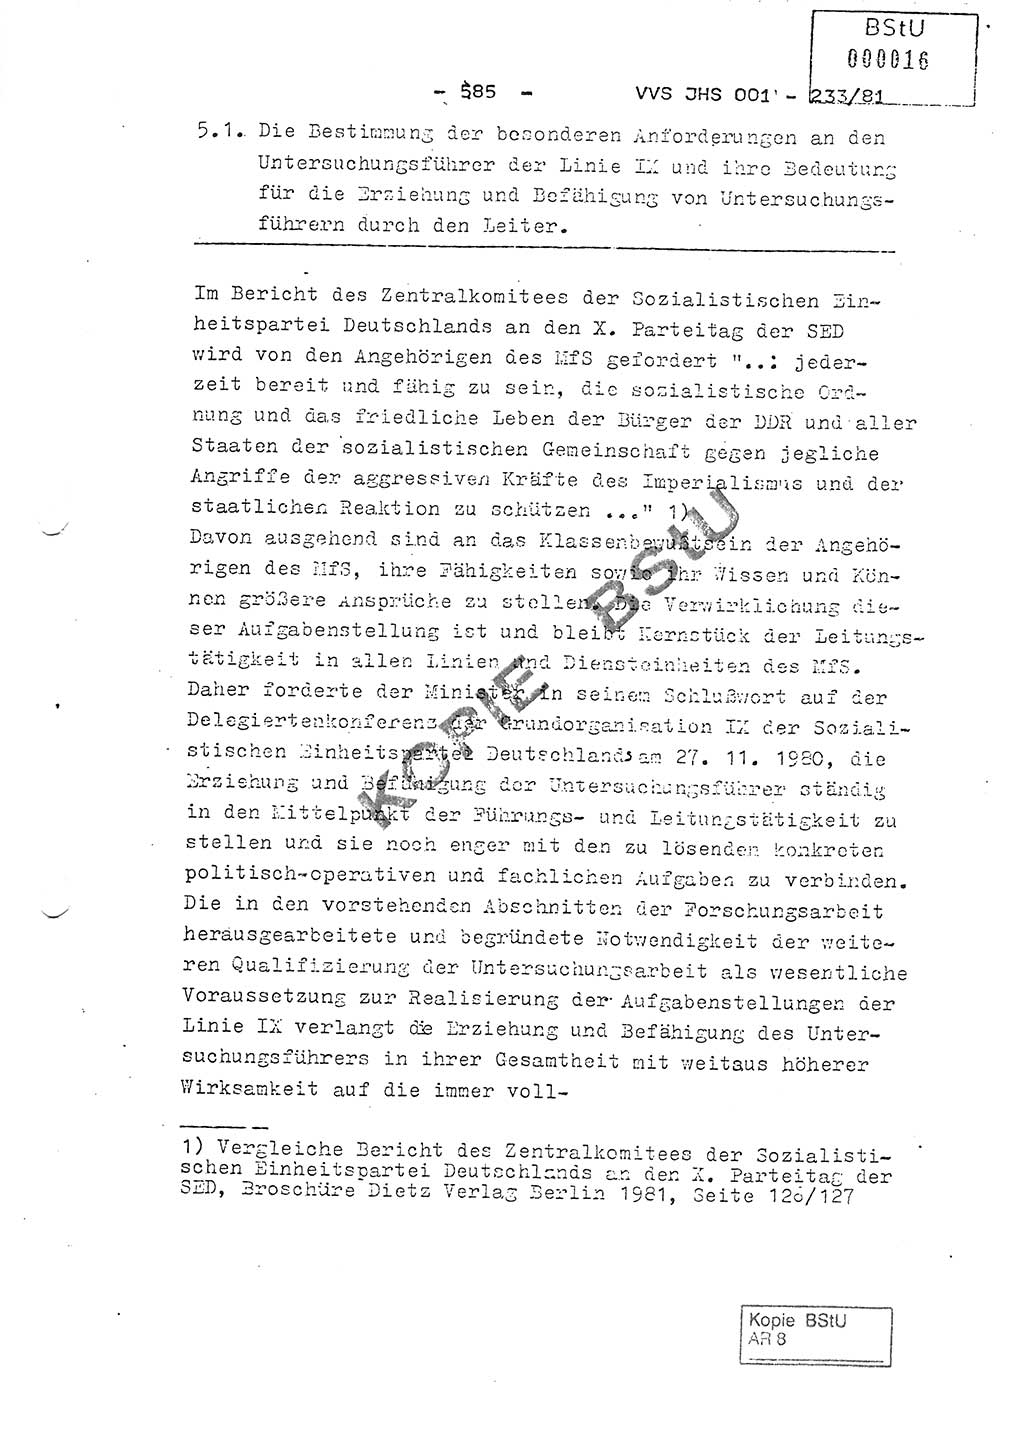 Dissertation Oberstleutnant Horst Zank (JHS), Oberstleutnant Dr. Karl-Heinz Knoblauch (JHS), Oberstleutnant Gustav-Adolf Kowalewski (HA Ⅸ), Oberstleutnant Wolfgang Plötner (HA Ⅸ), Ministerium für Staatssicherheit (MfS) [Deutsche Demokratische Republik (DDR)], Juristische Hochschule (JHS), Vertrauliche Verschlußsache (VVS) o001-233/81, Potsdam 1981, Blatt 585 (Diss. MfS DDR JHS VVS o001-233/81 1981, Bl. 585)